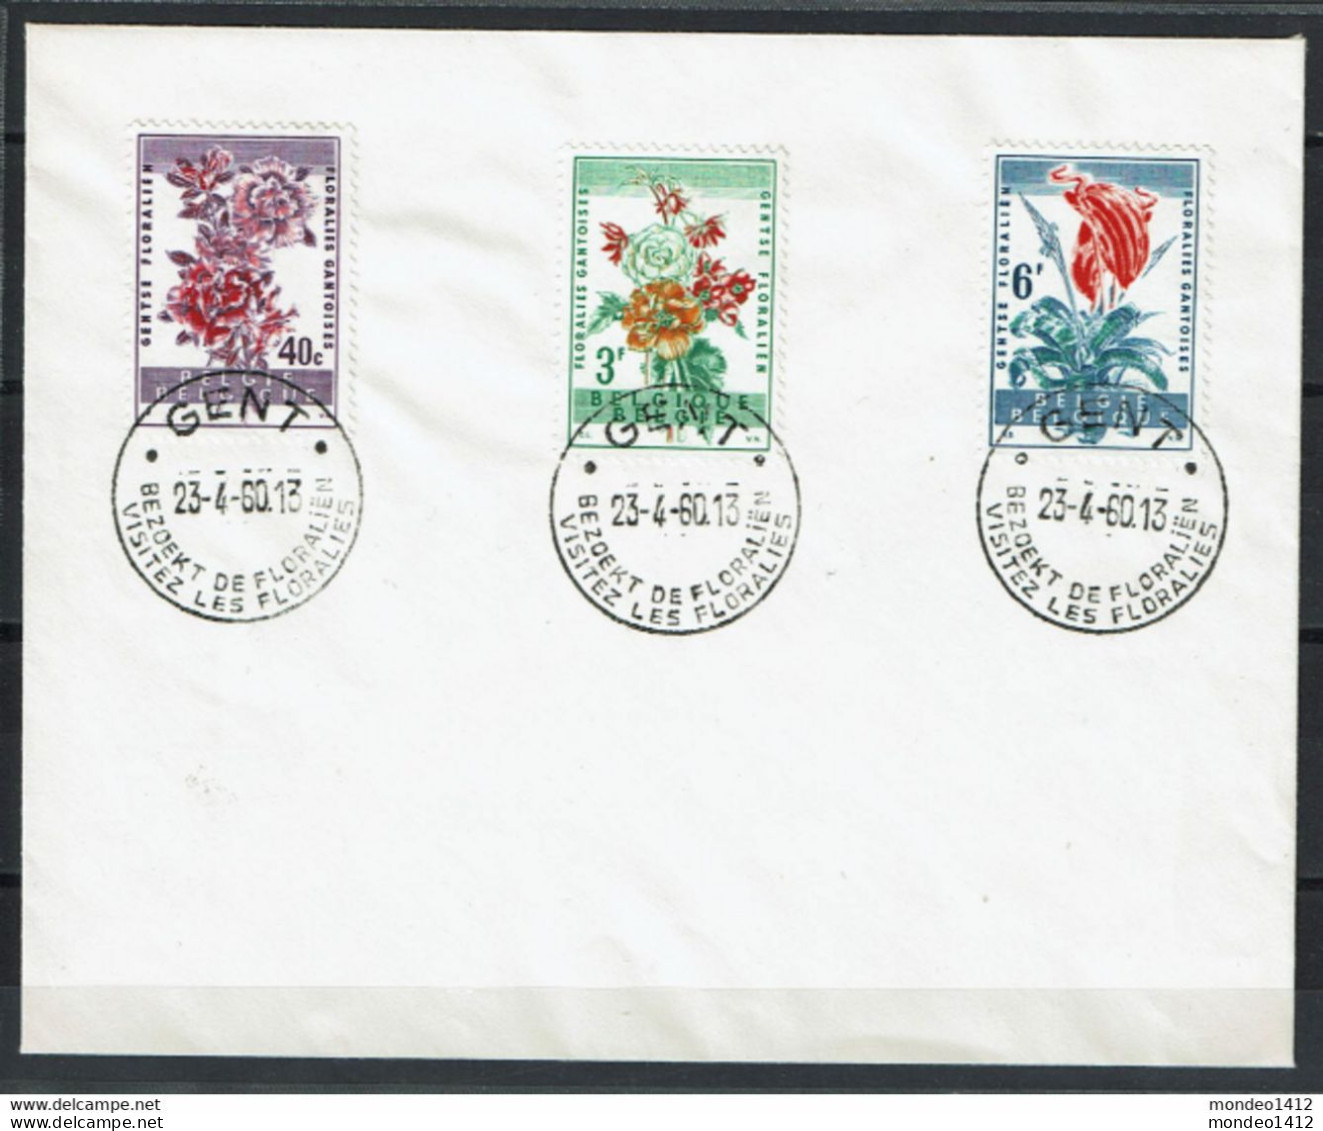 België - 1122-1124 - Stempel Gent - Bezoekt De Floraliën - Storia Postale